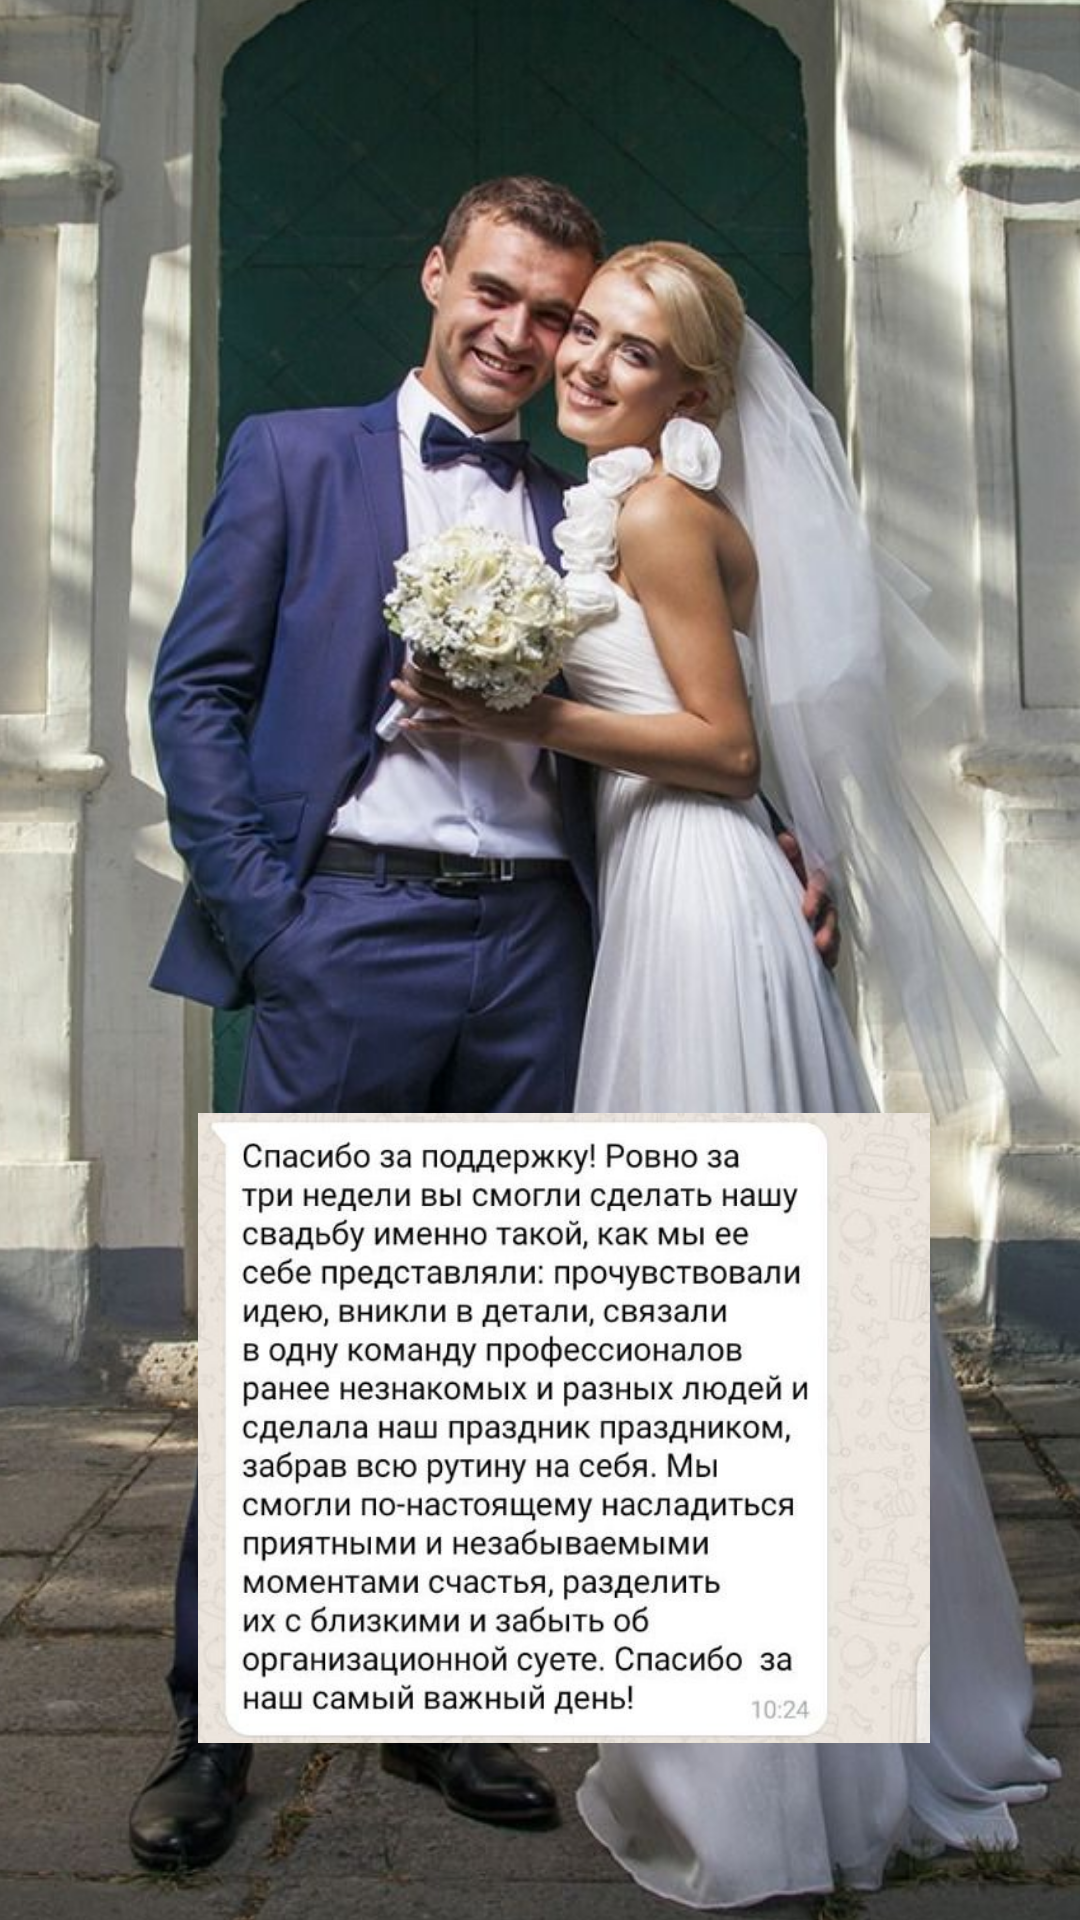 Организация свадьбы во Владимире
от компании Pandaevent